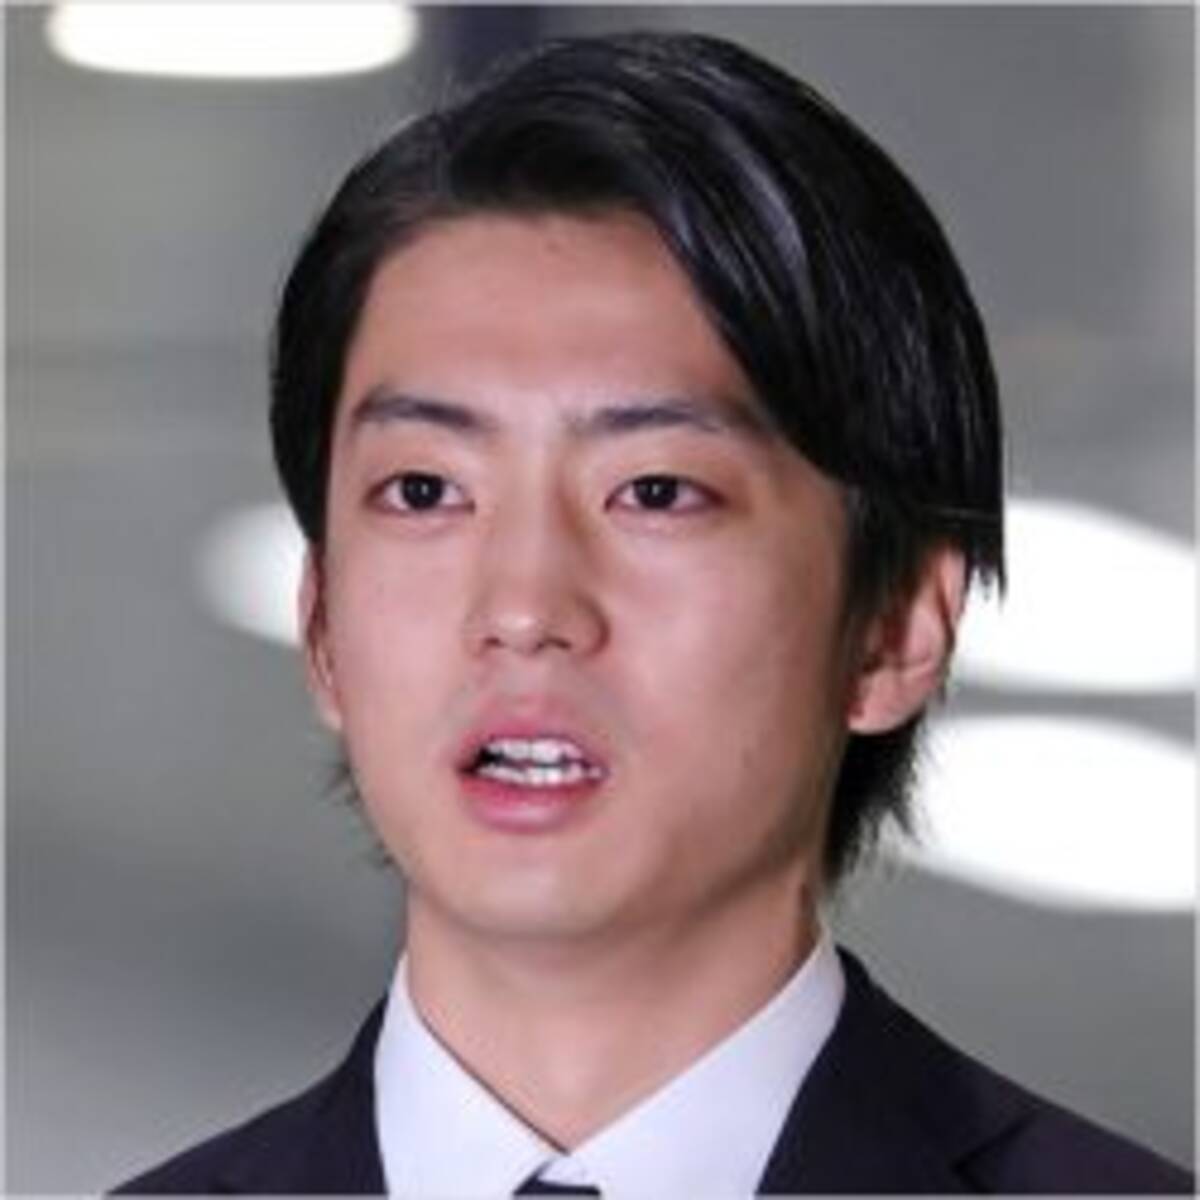 強制キス 不貞 離婚 伊藤健太郎逮捕で囁かれる Zip の呪い 再発動 年11月4日 エキサイトニュース